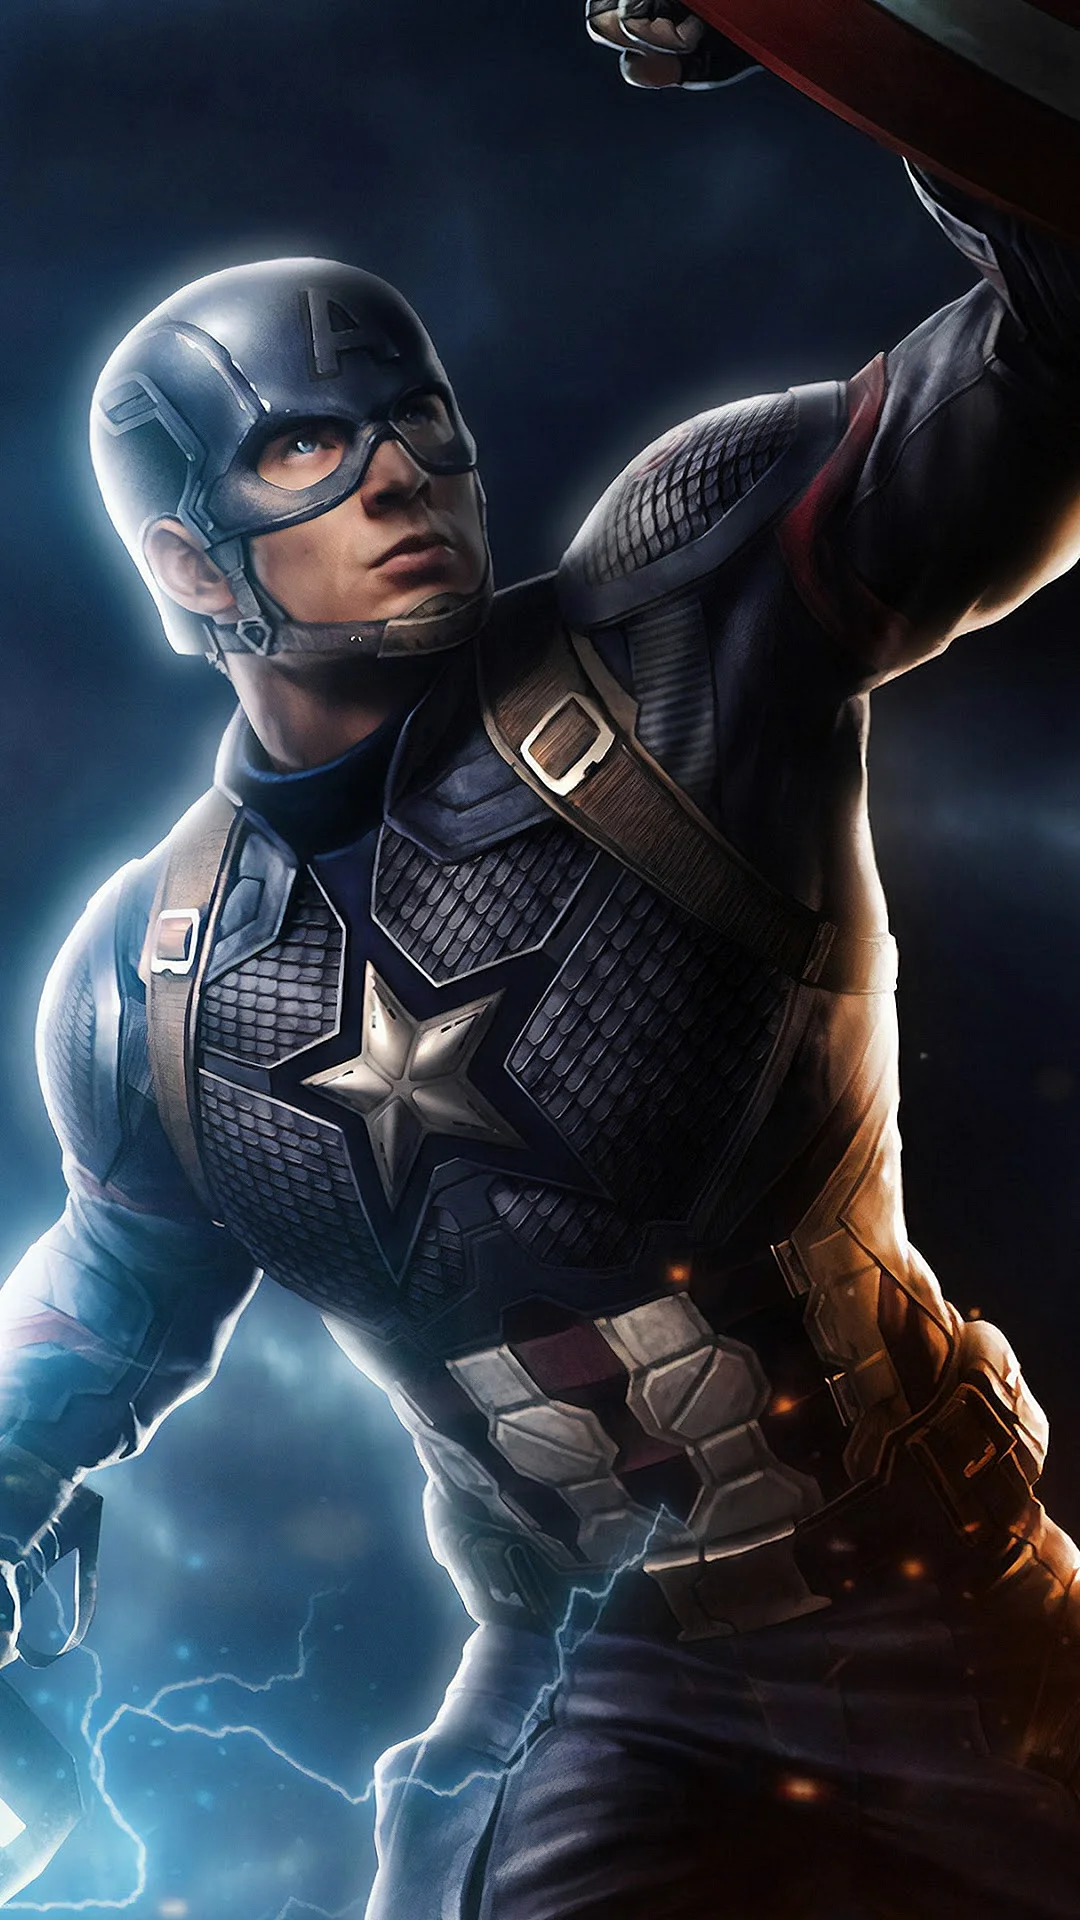 Avengers Endgame Captain America Wallpaper For iPhone